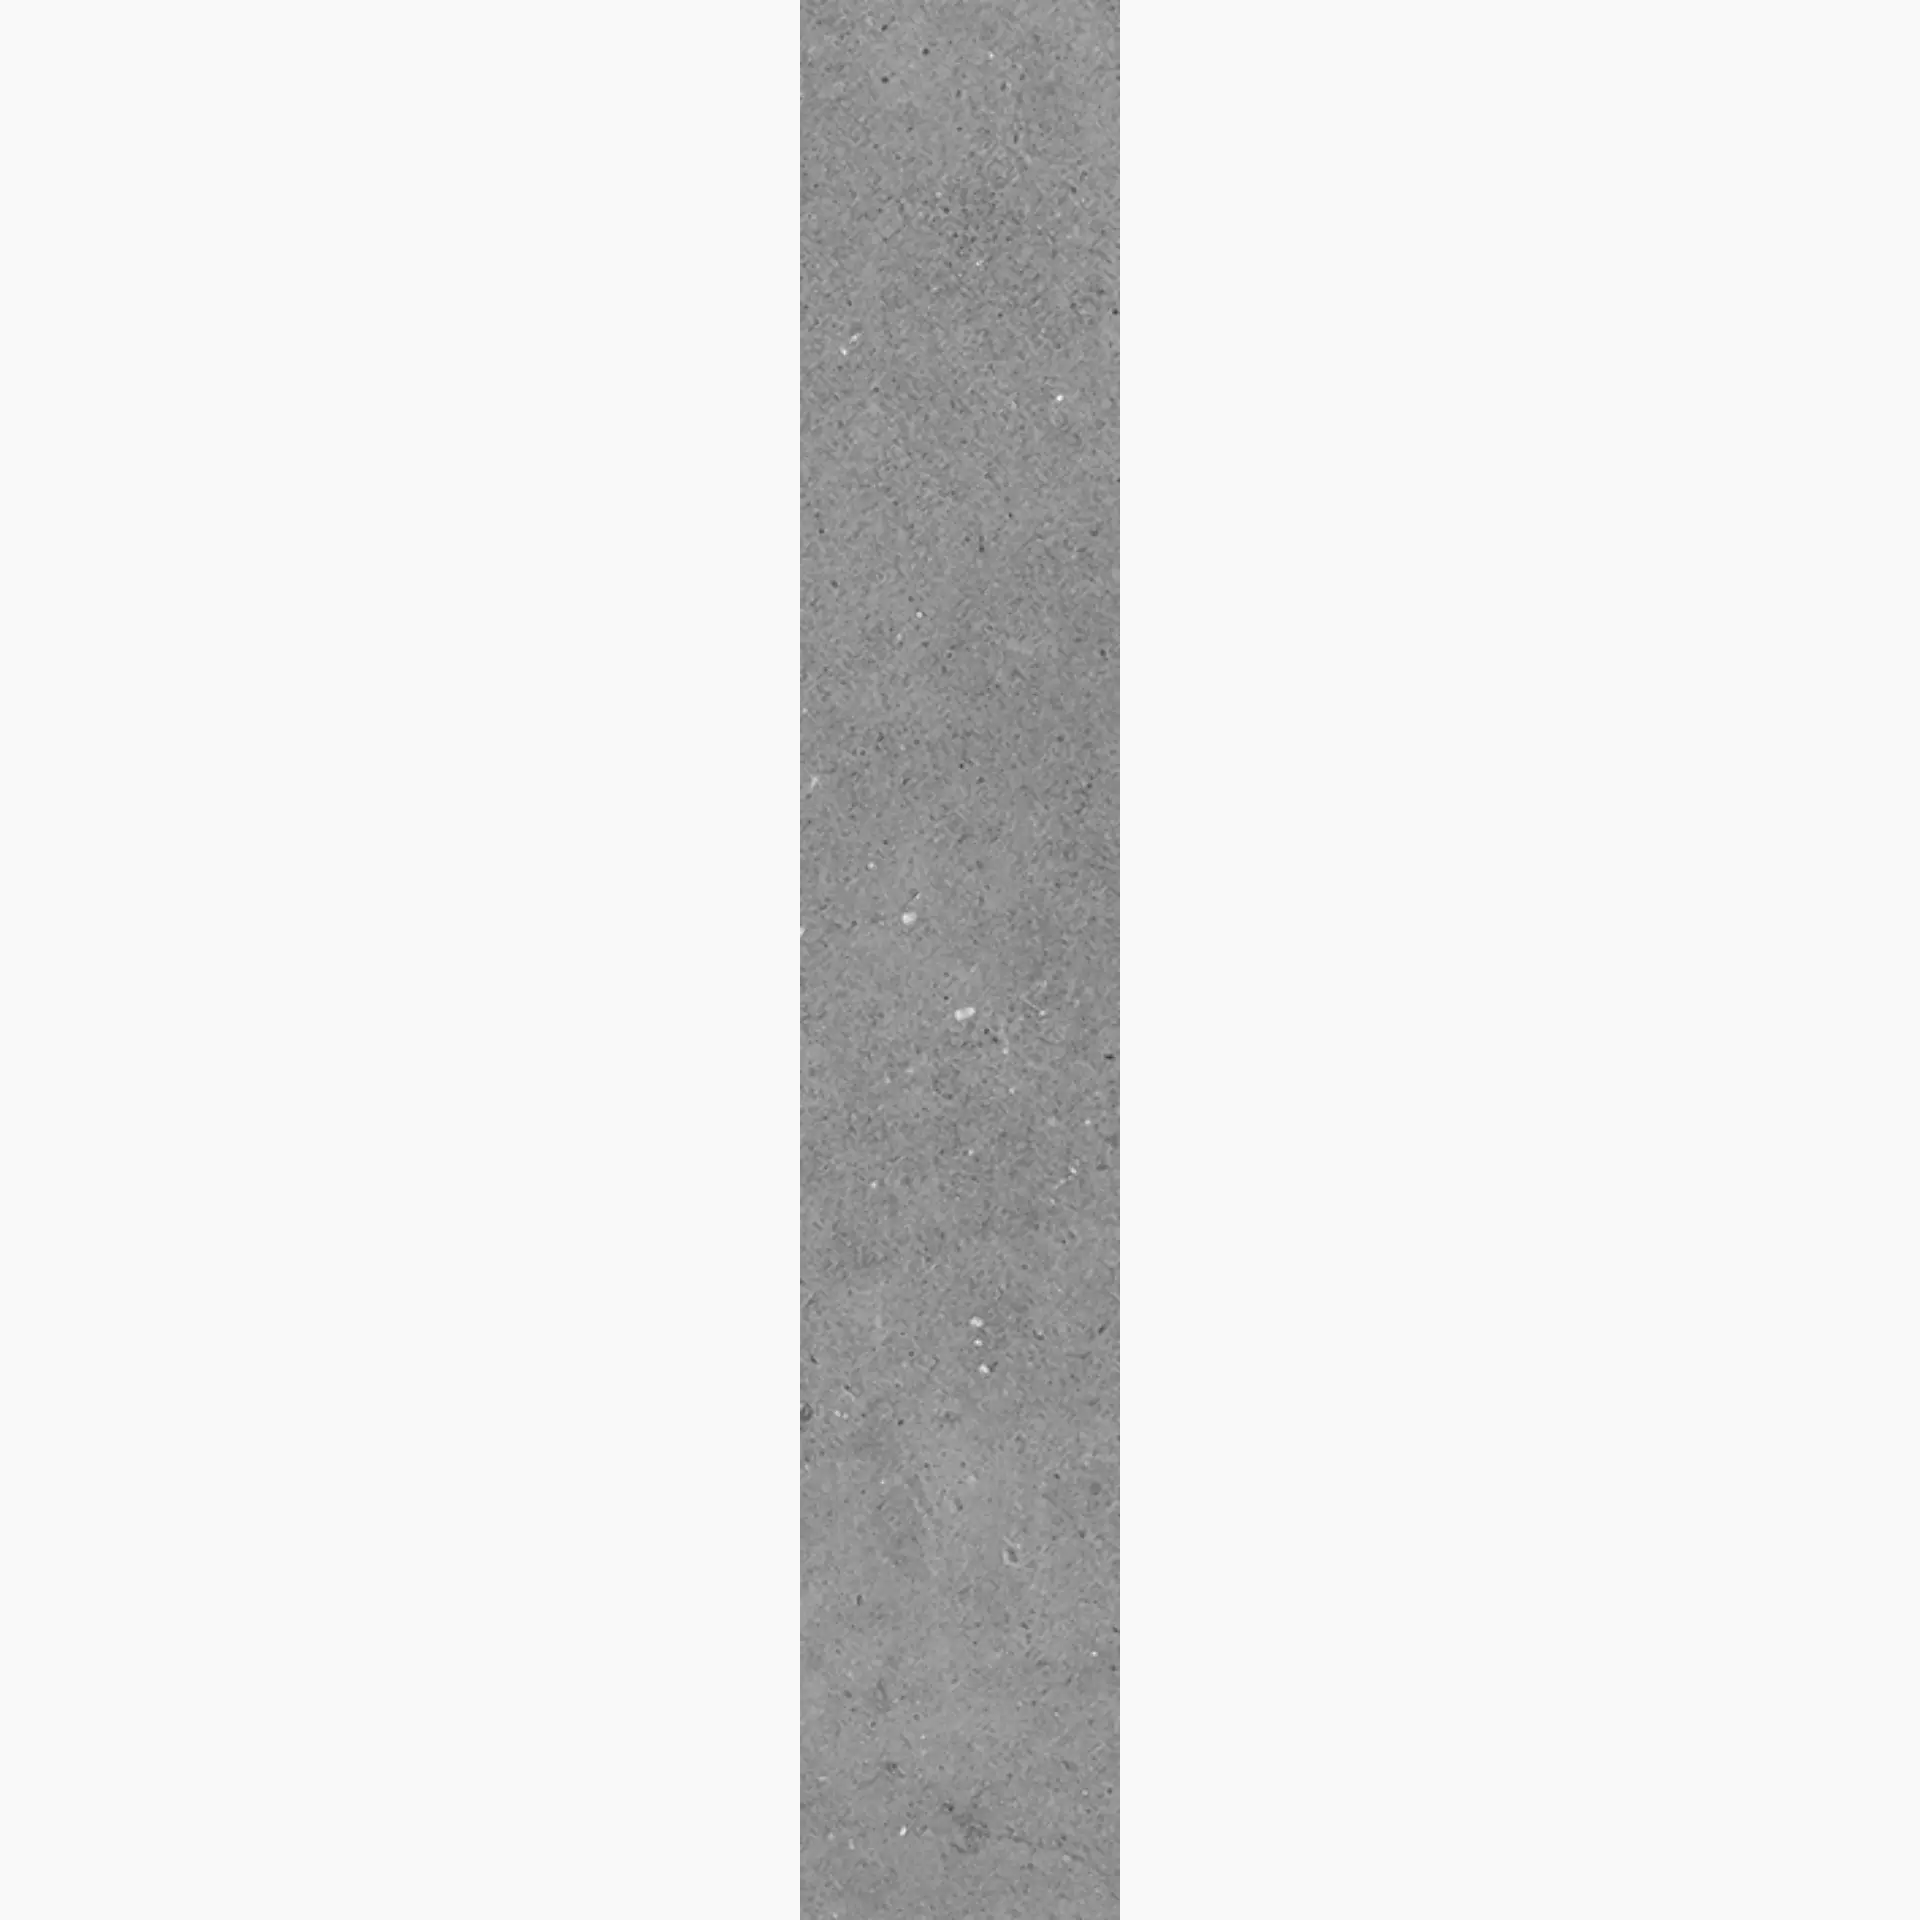 Villeroy & Boch Solid Tones Pure Concrete Matt 2417-PC61 10x60cm rectified 10mm